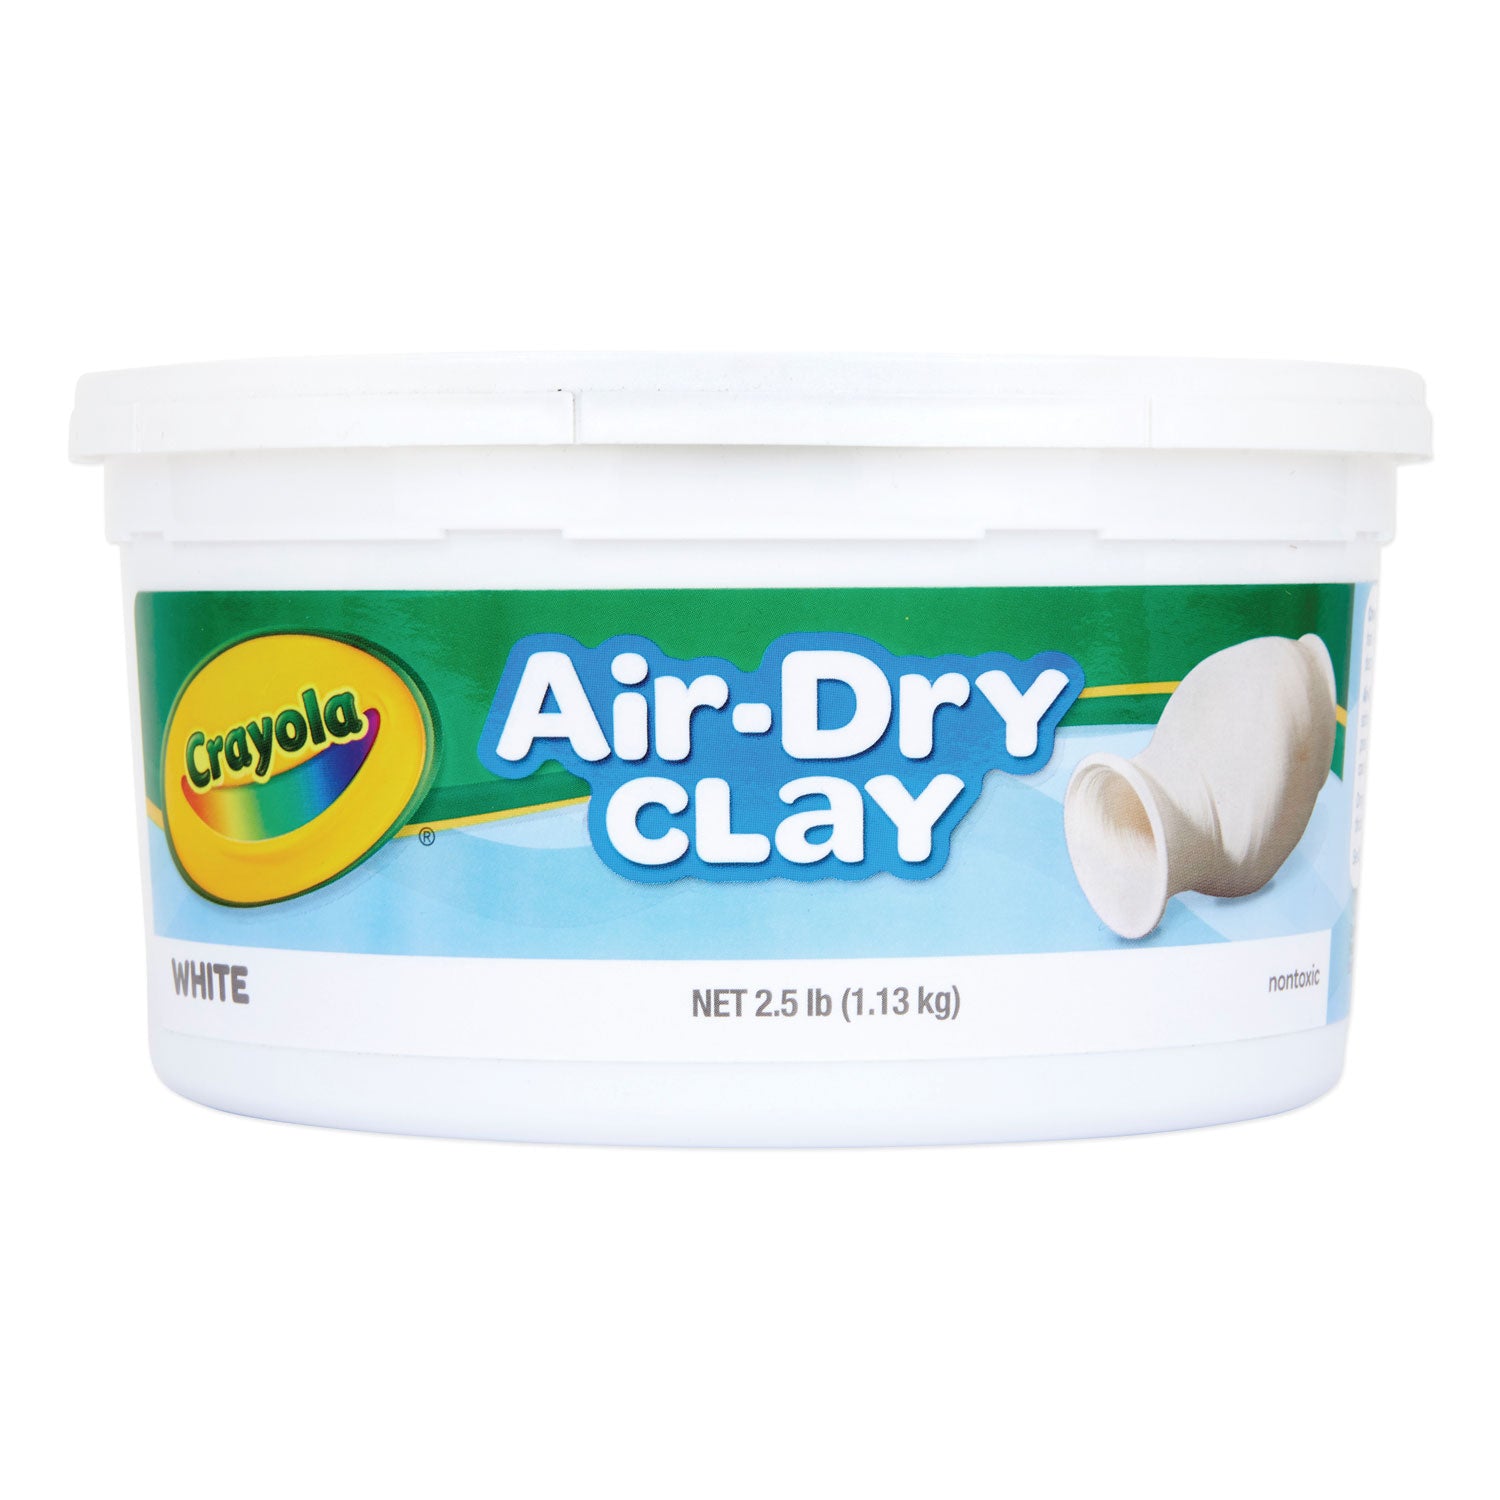 Air-Dry Clay,White, 2.5 lbs - 